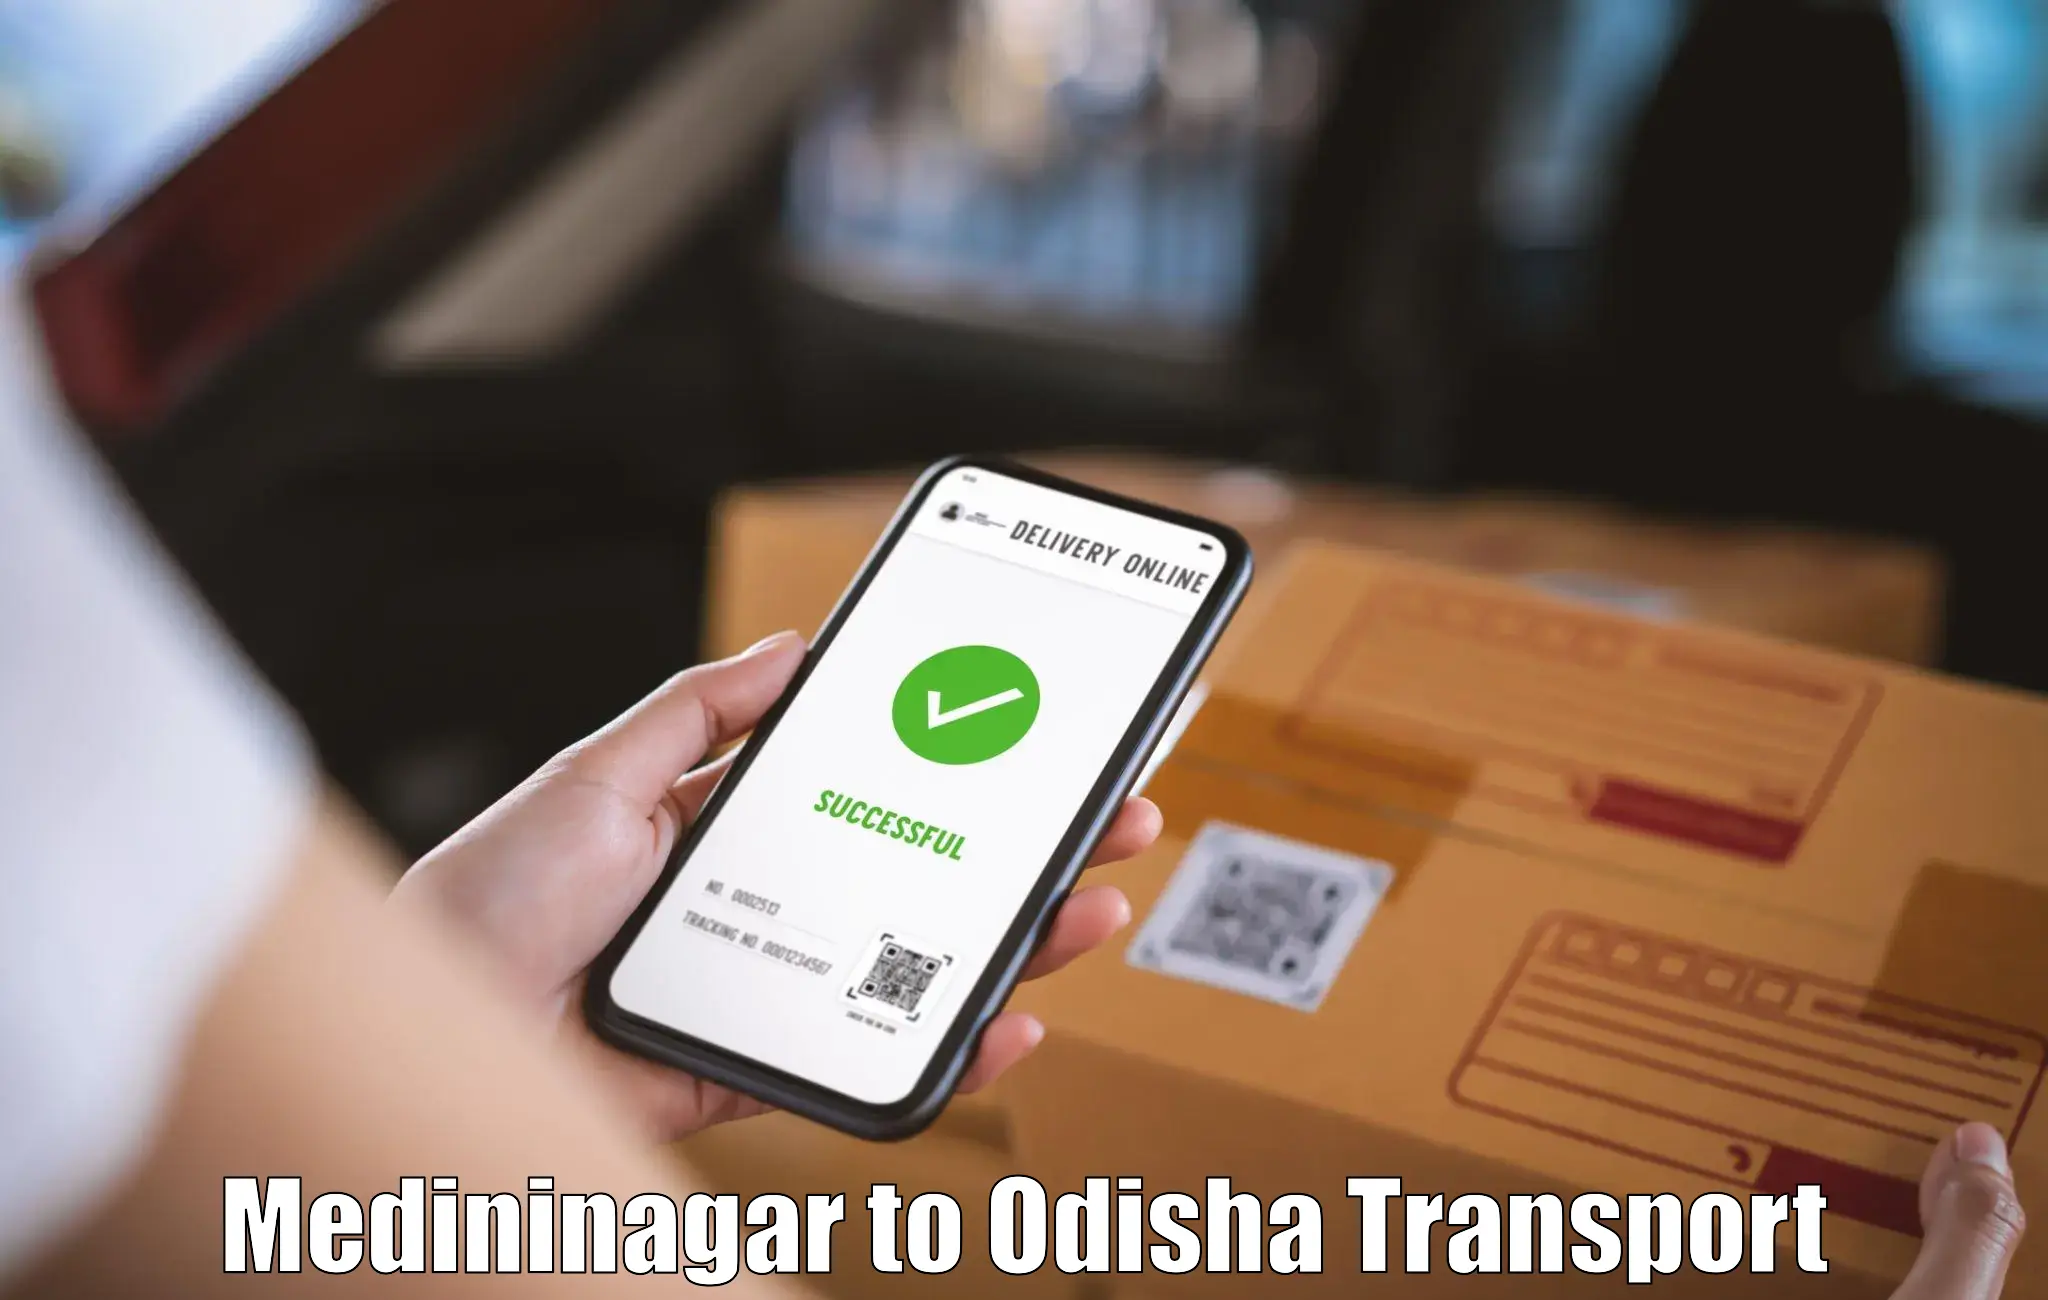 Transport services in Medininagar to Balangir